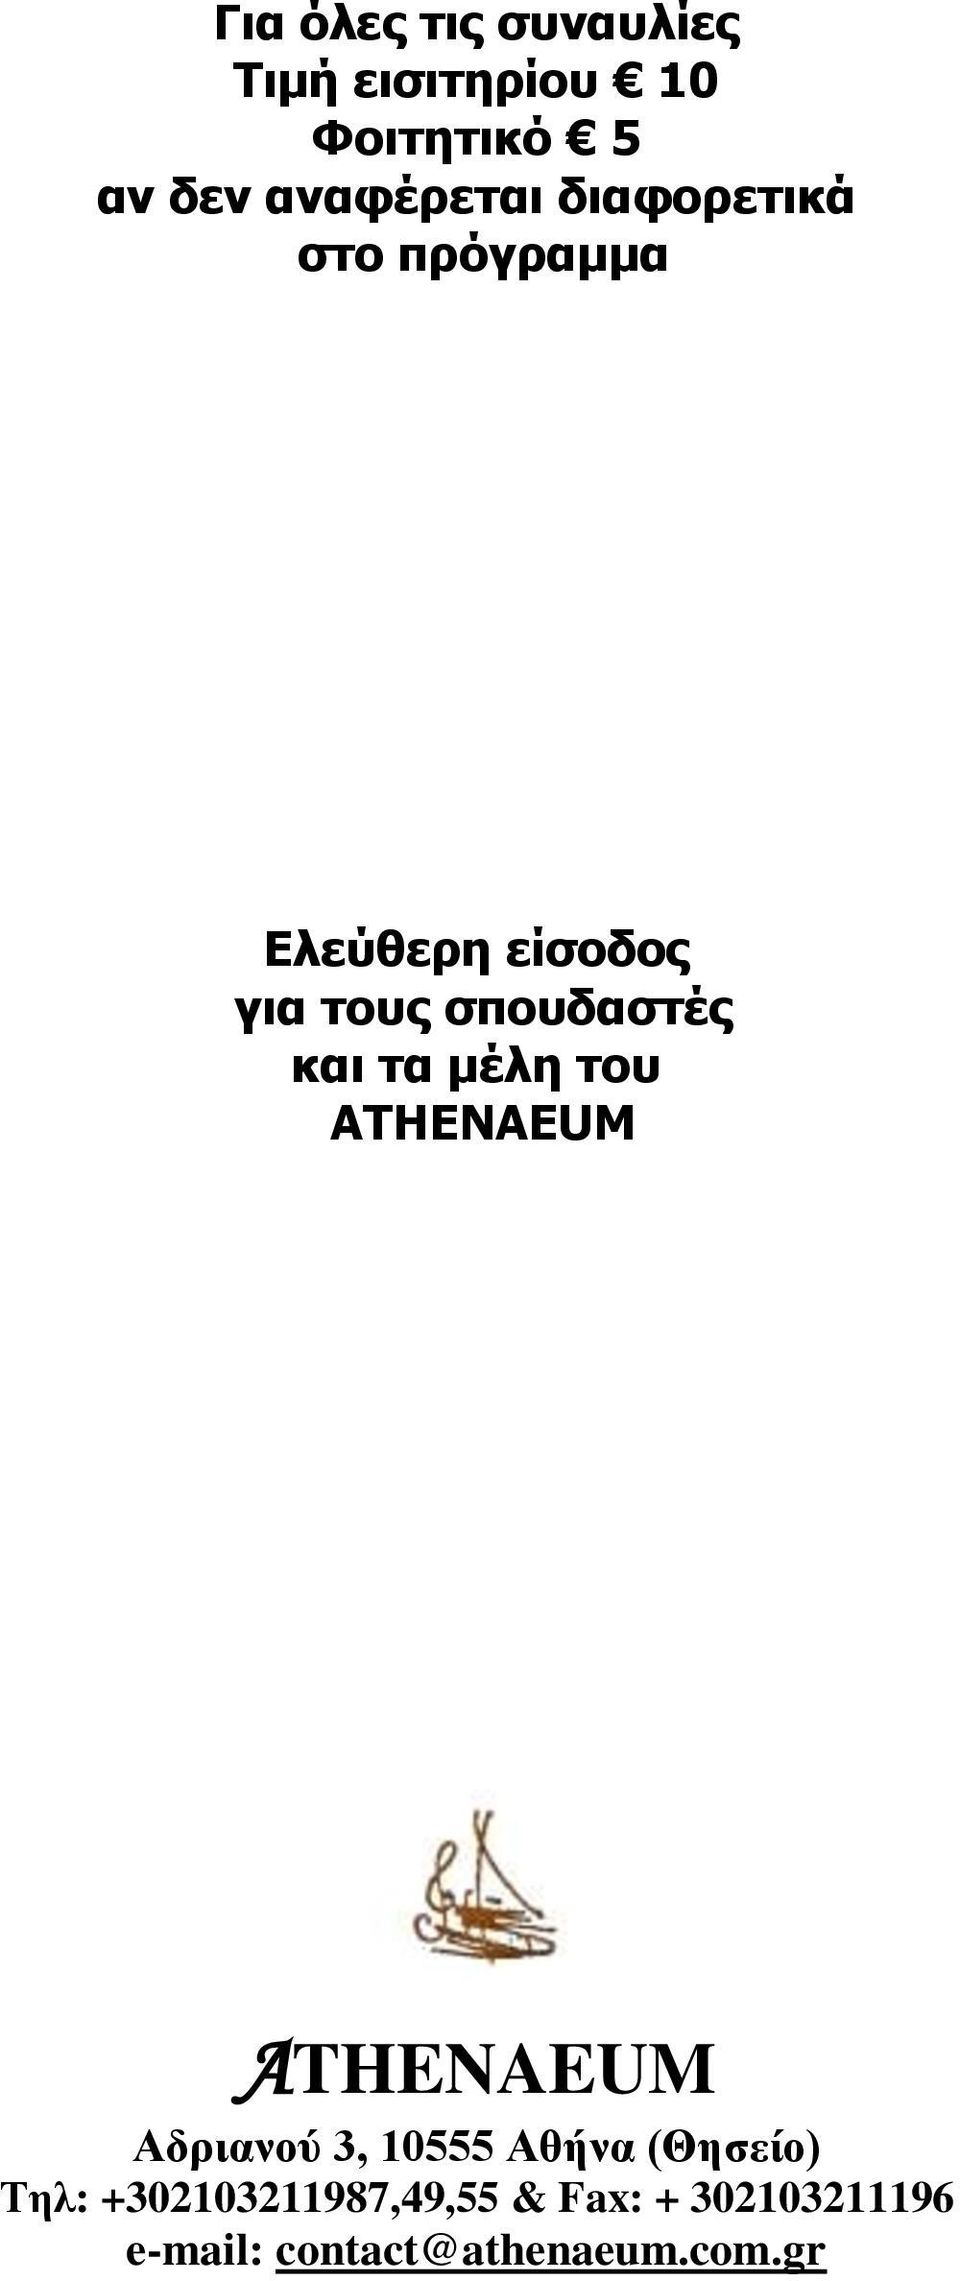 σπουδαστές και τα μέλη του ATHENAEUM ATHENAEUM Αδριανού 3, 10555 Αθήνα